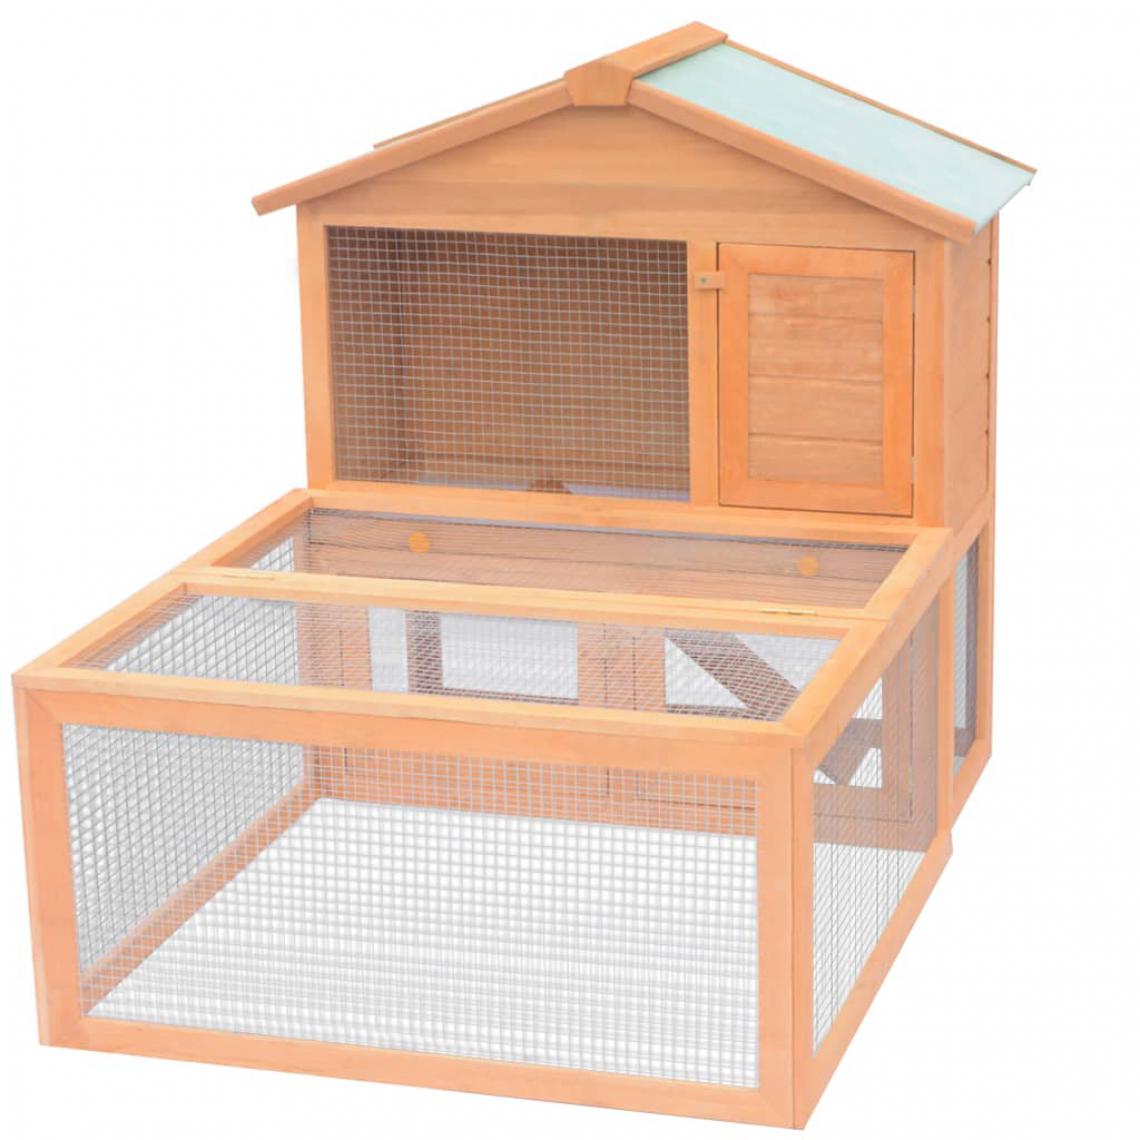 Icaverne - Superbe Accessoires pour petits animaux categorie Libreville Cage pour animaux Bois - Cage à oiseaux